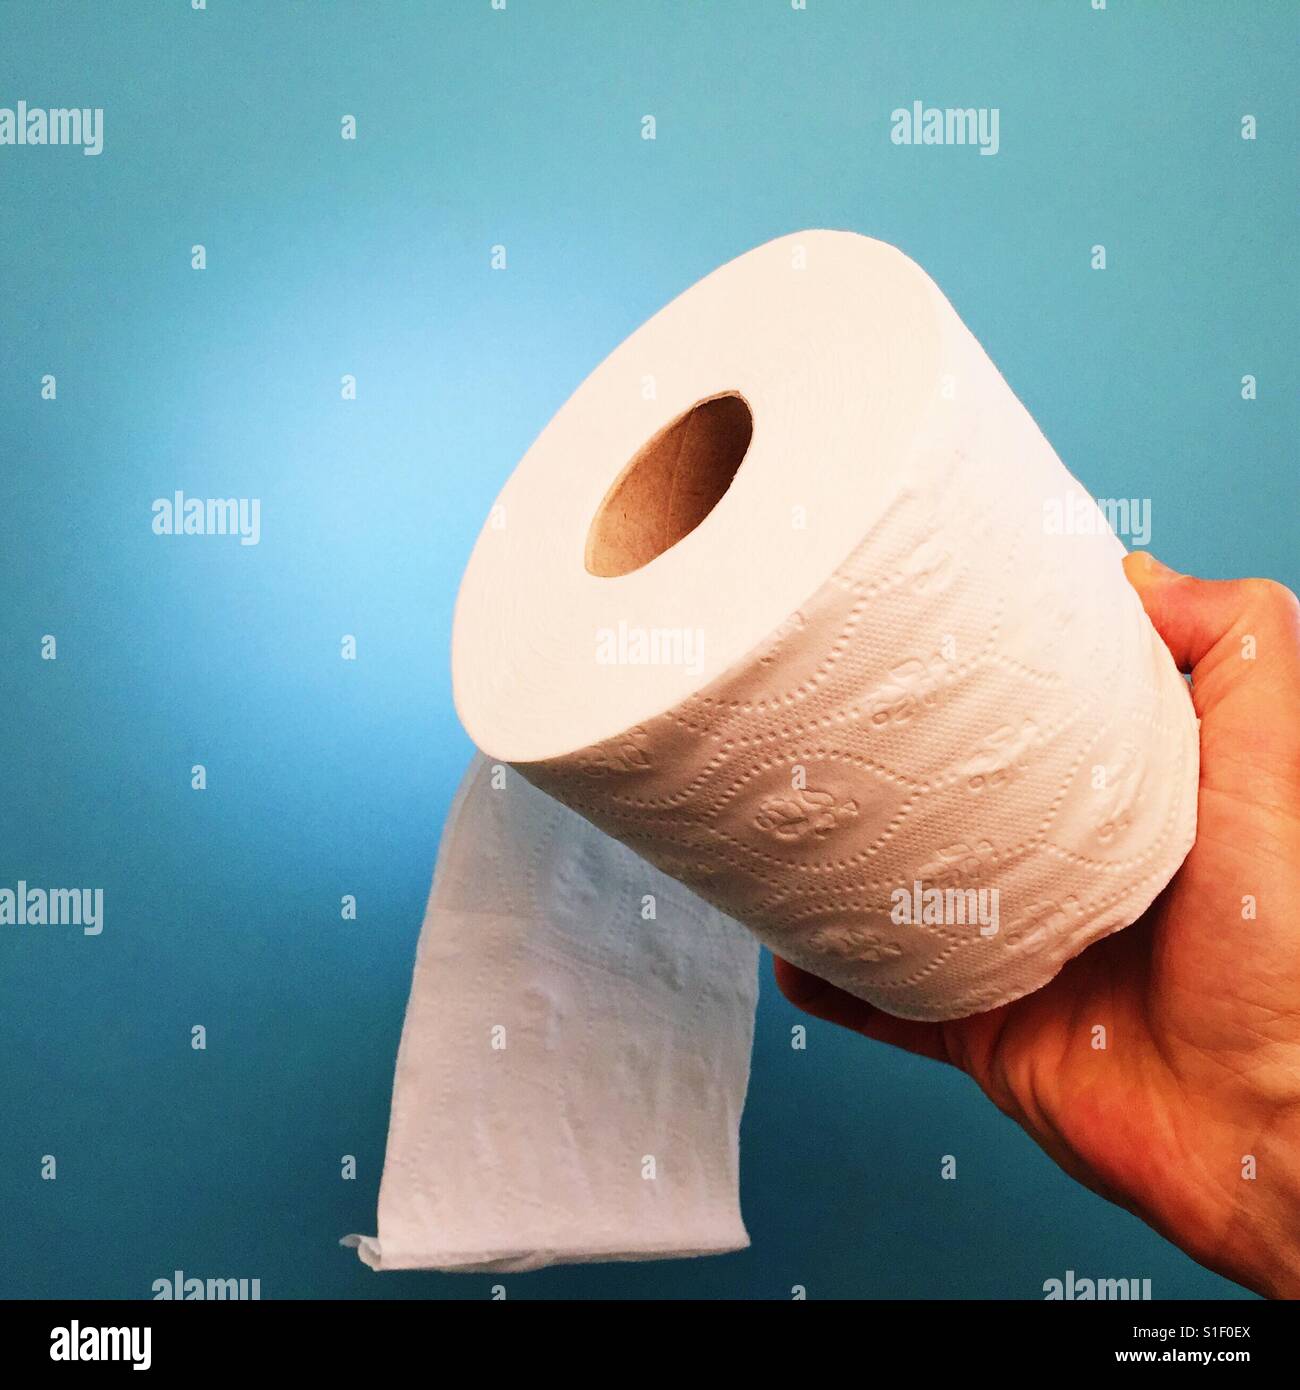 Mannes Hand hält eine Rolle Toilettenpapier Stockfoto